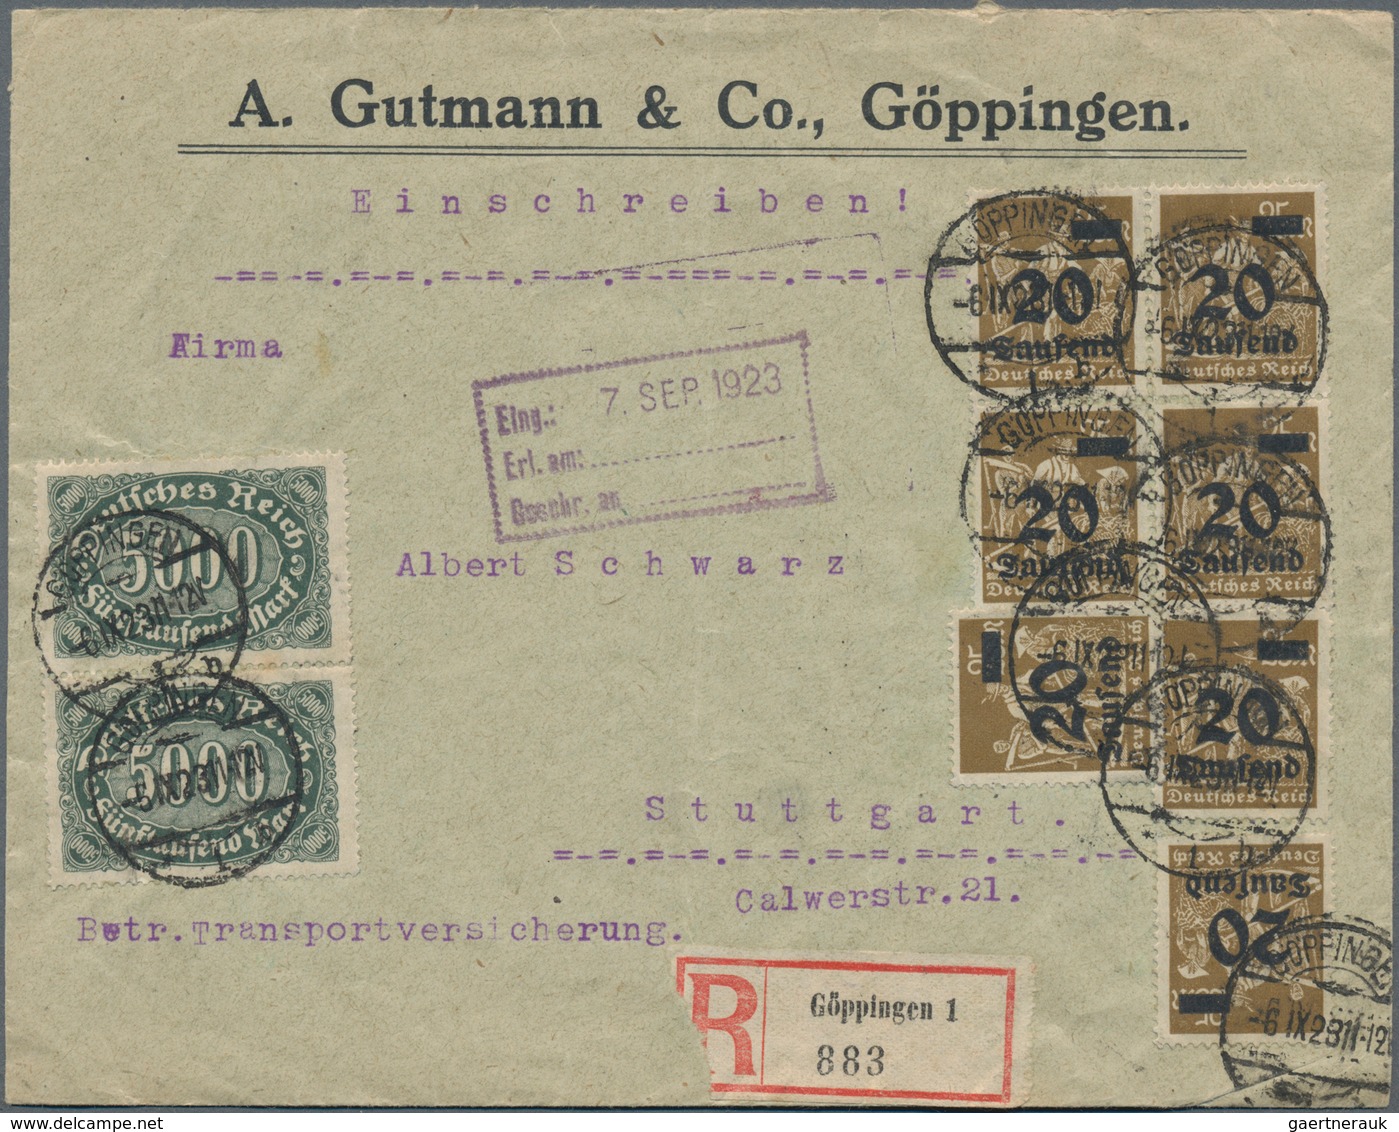 Deutsches Reich - Inflation: 1921/1923, vielseitige Partie von ca. 180 Briefen und Karten, soweit er